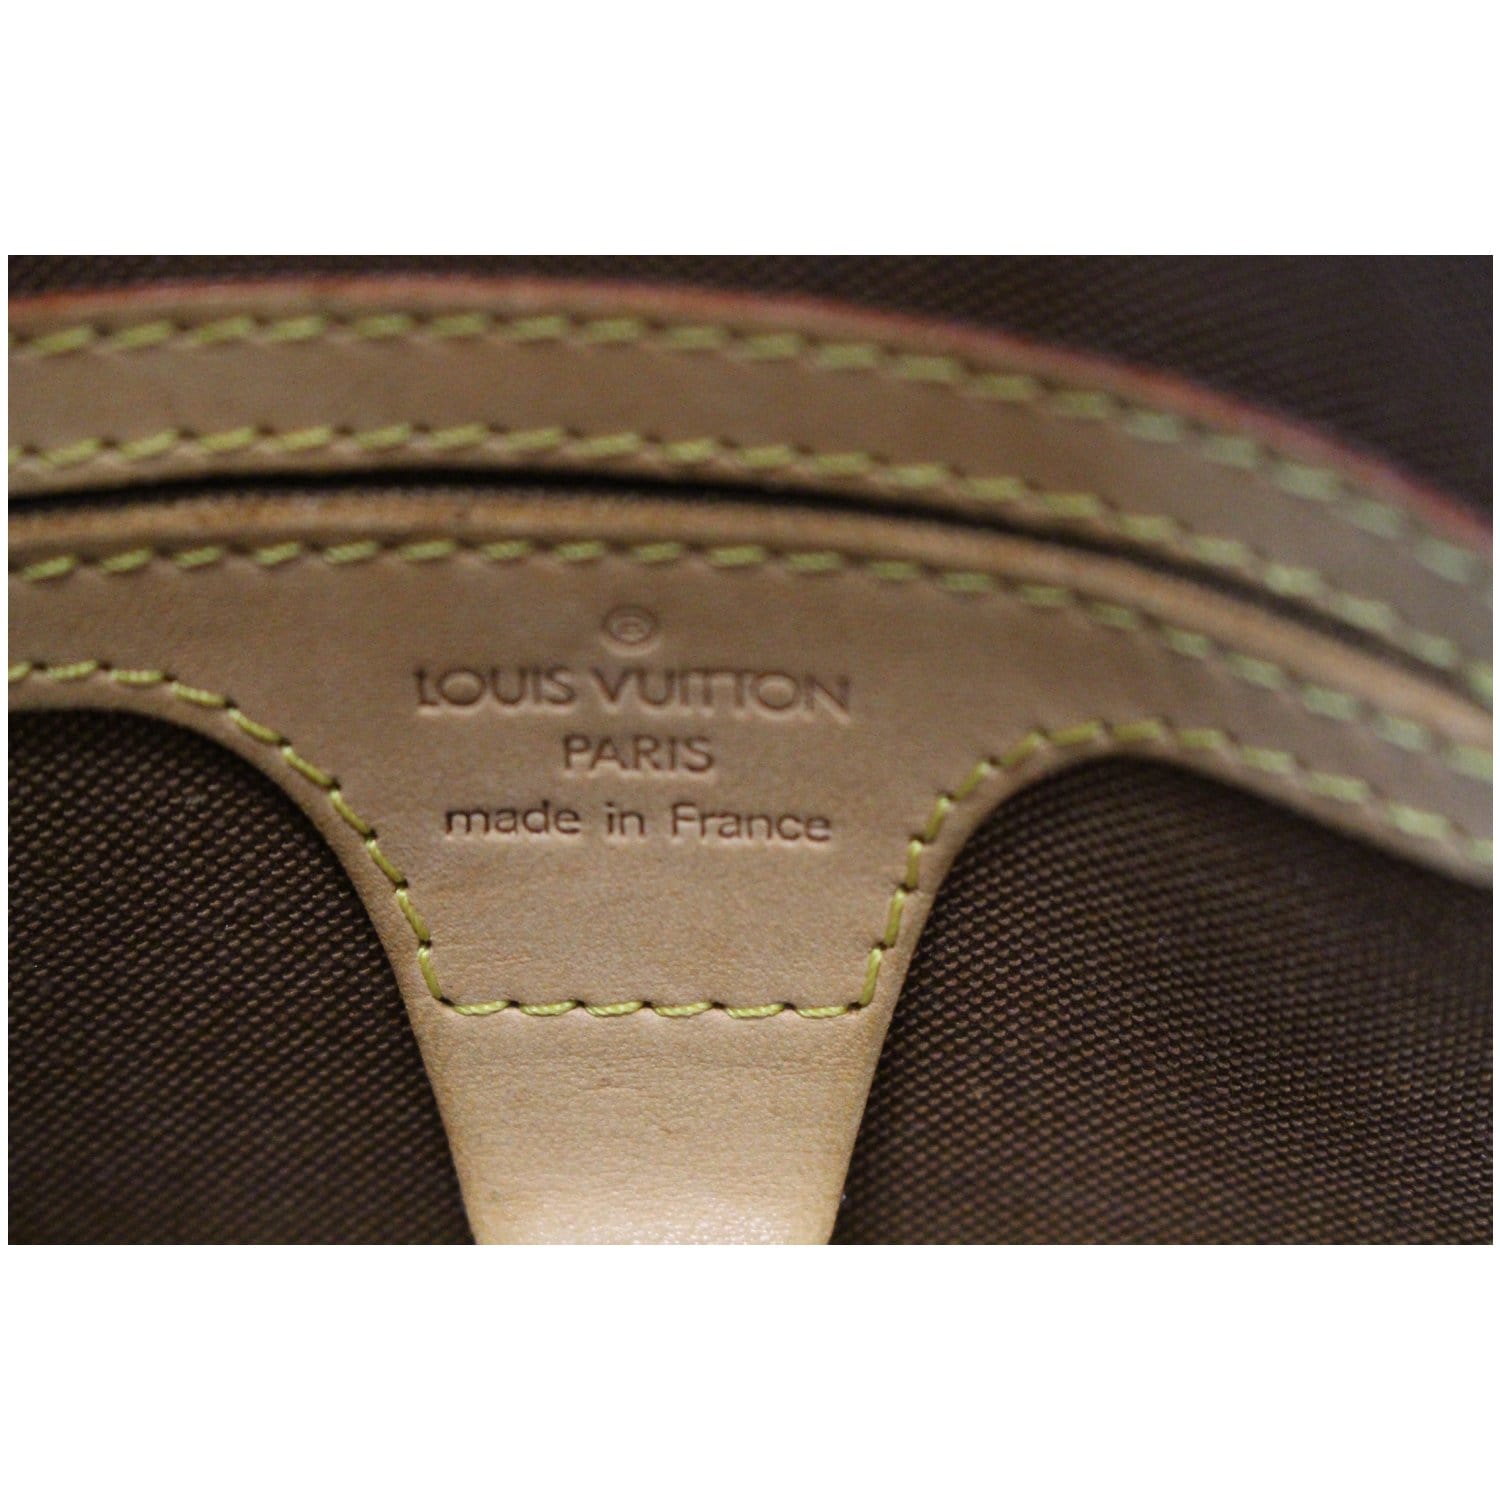 Date Code & Stamp] Louis Vuitton Ellipse